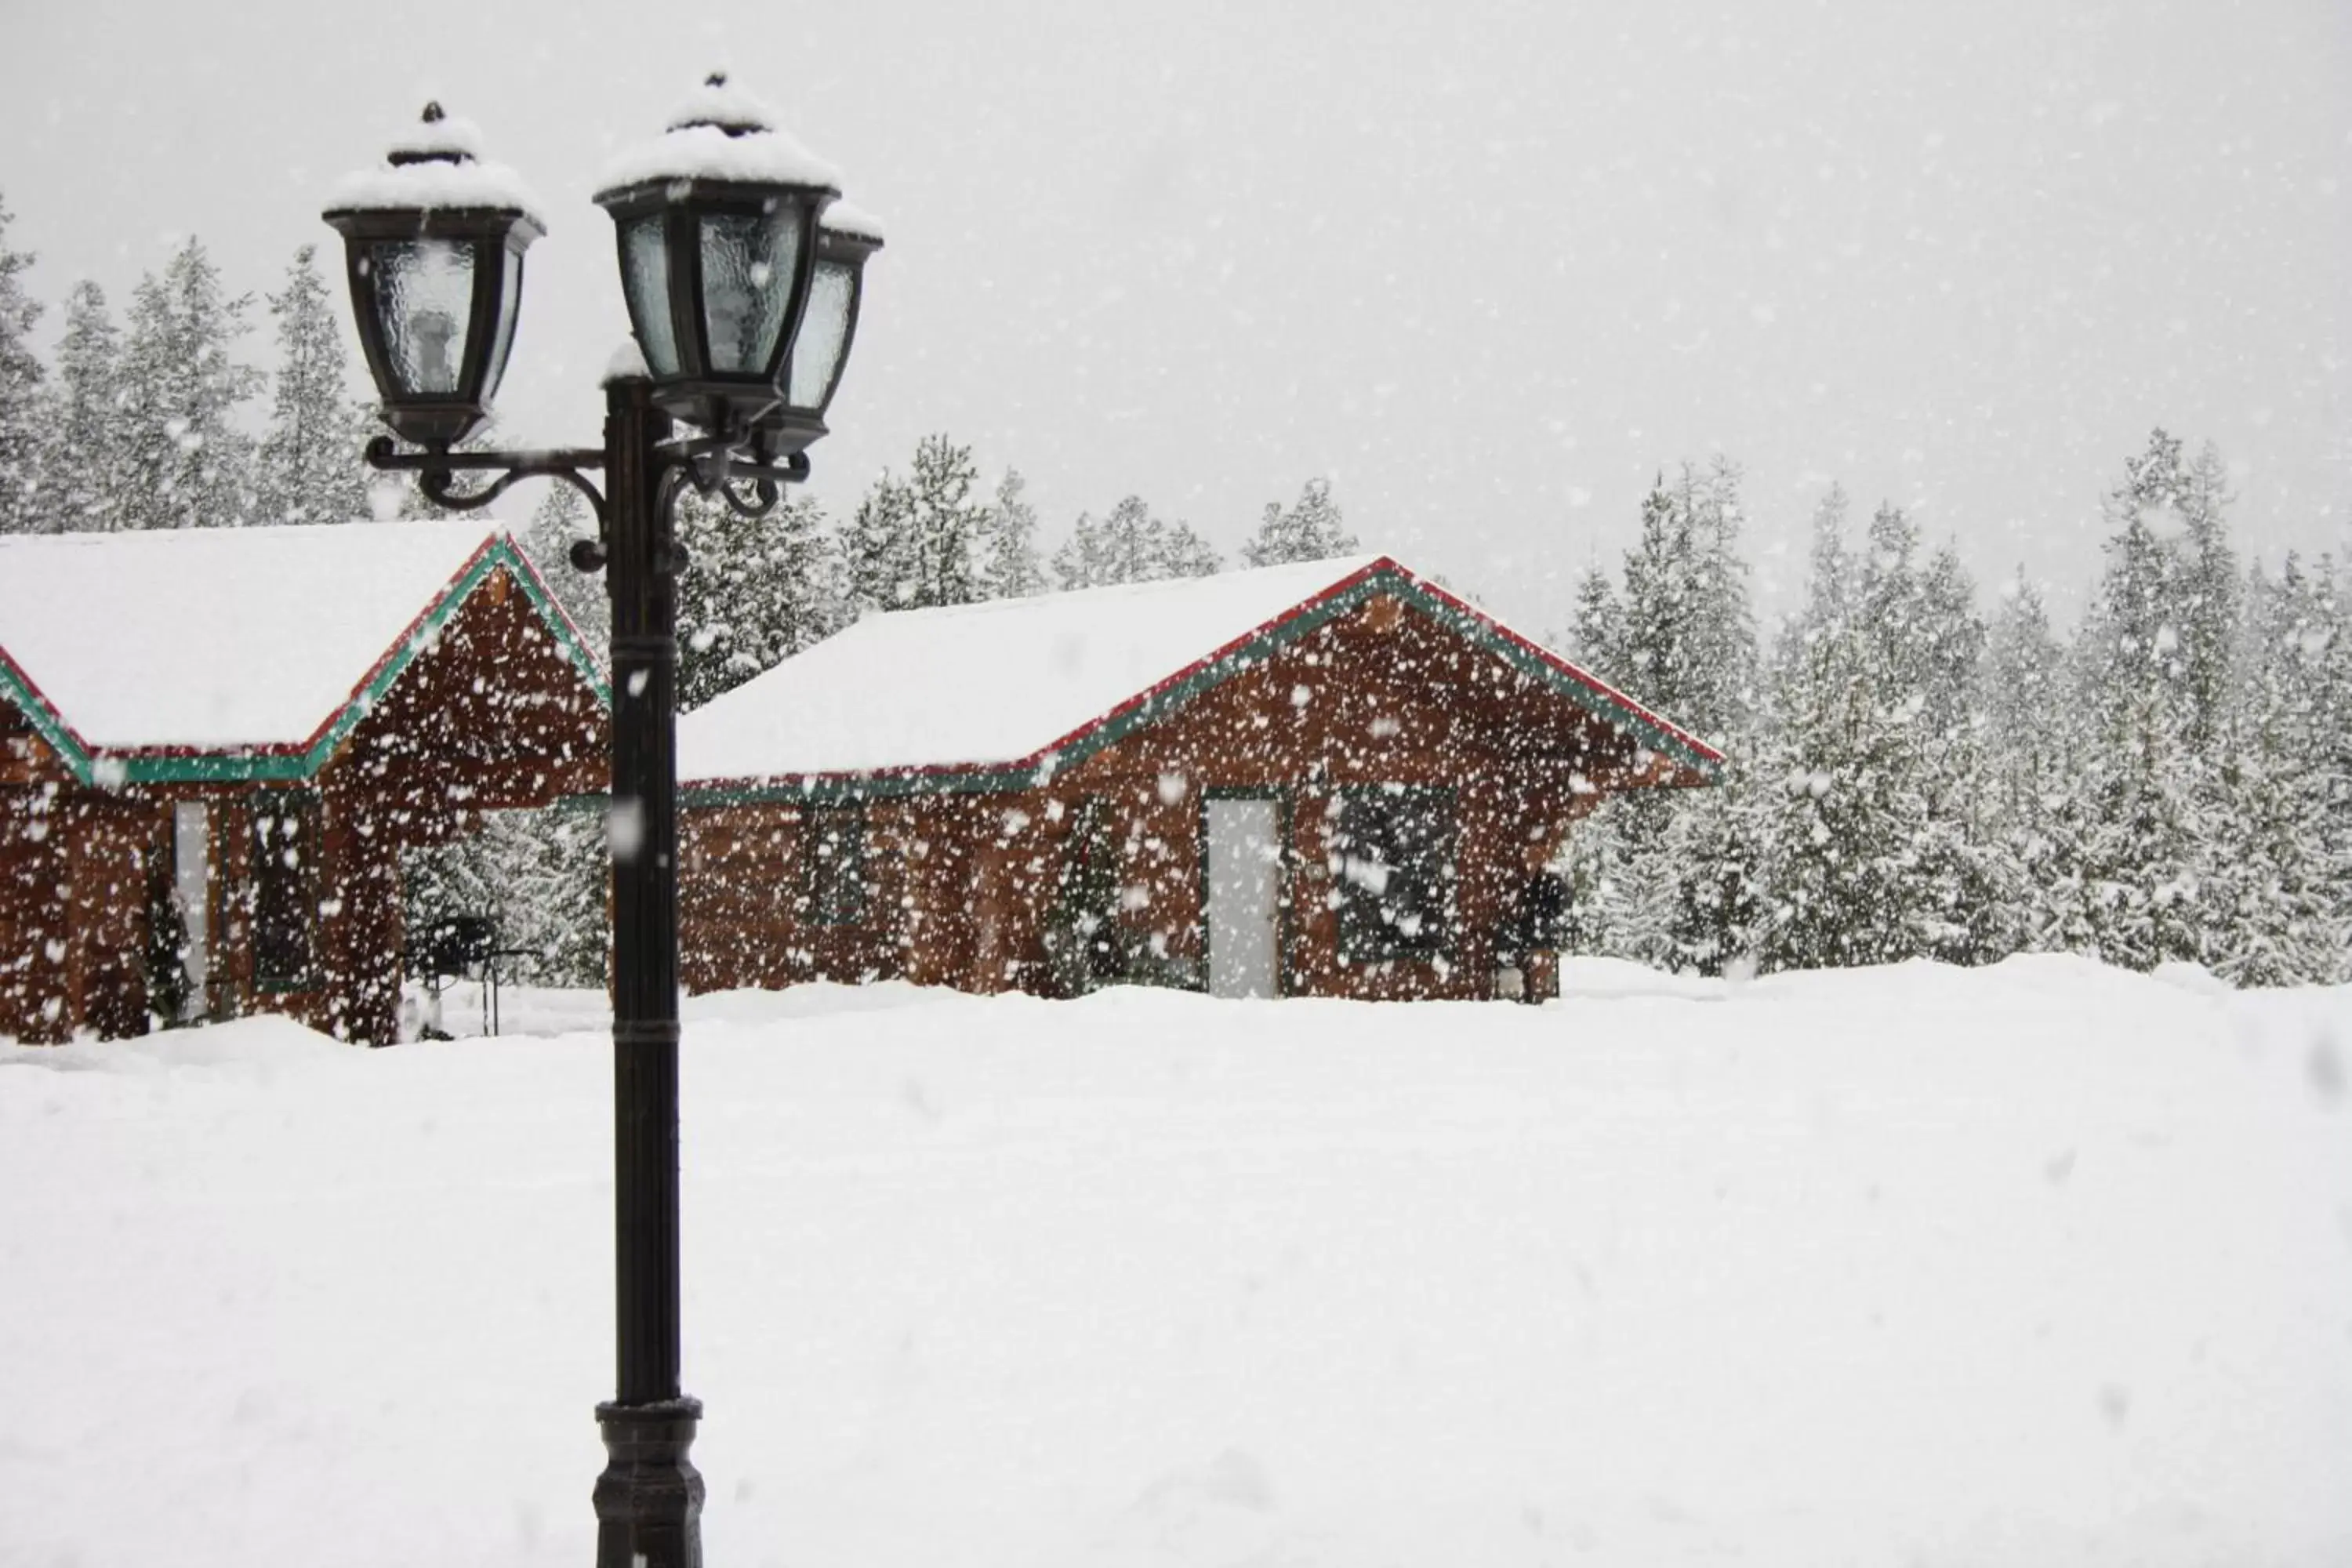 Winter in Twin Peaks Resort